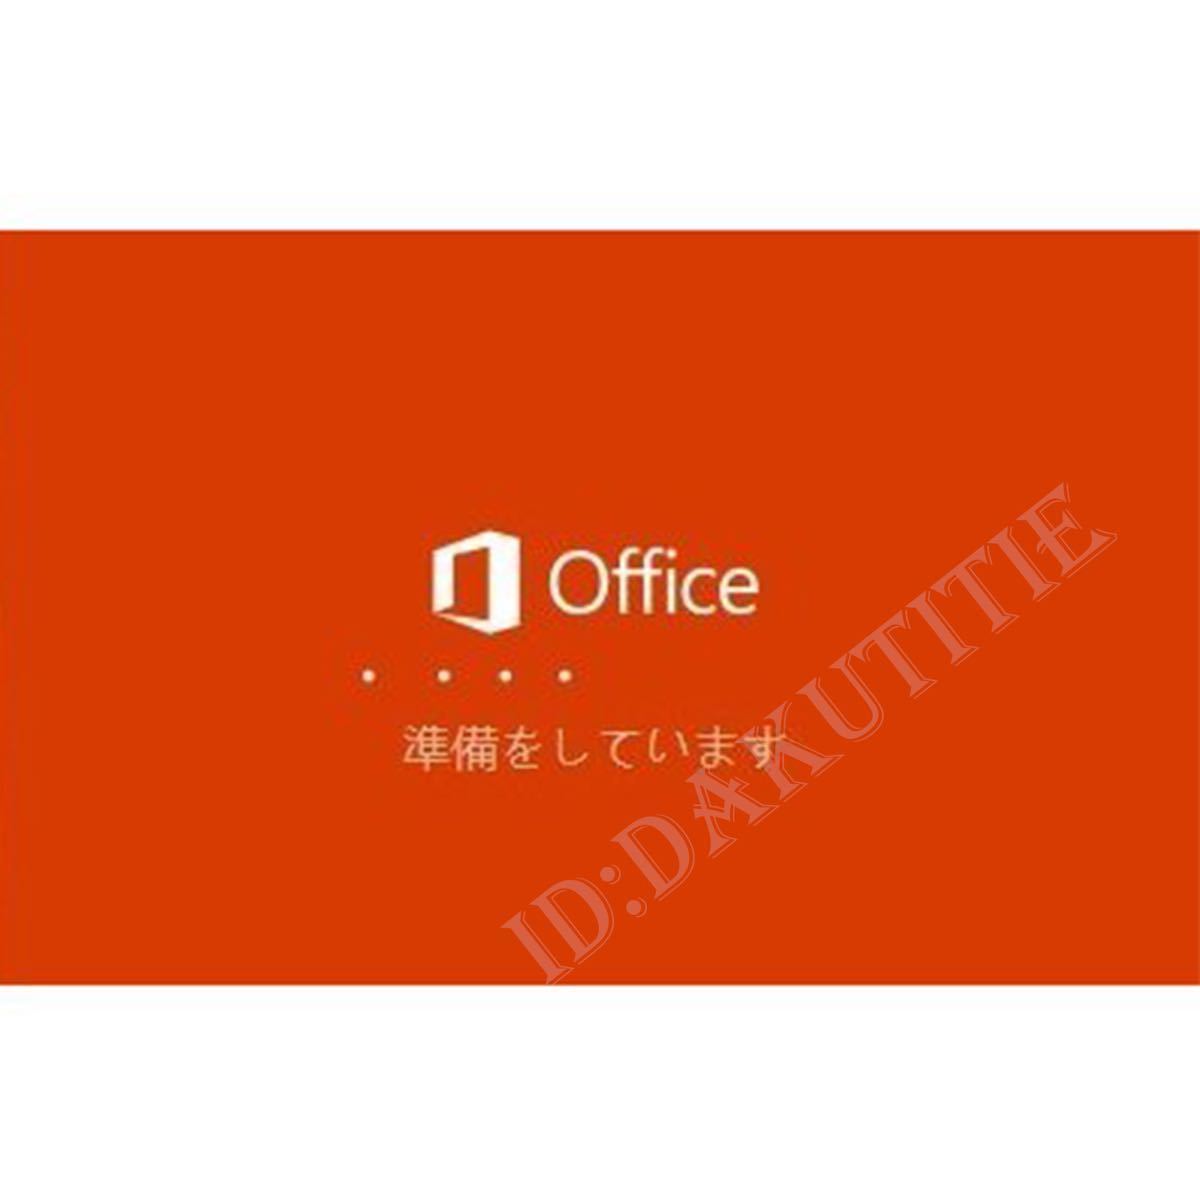 【最短5分以内発送】Microsoft Office 2021 Professional Plus オフィス2021 正規 Word Excel 手順書ありプロダクトキーm